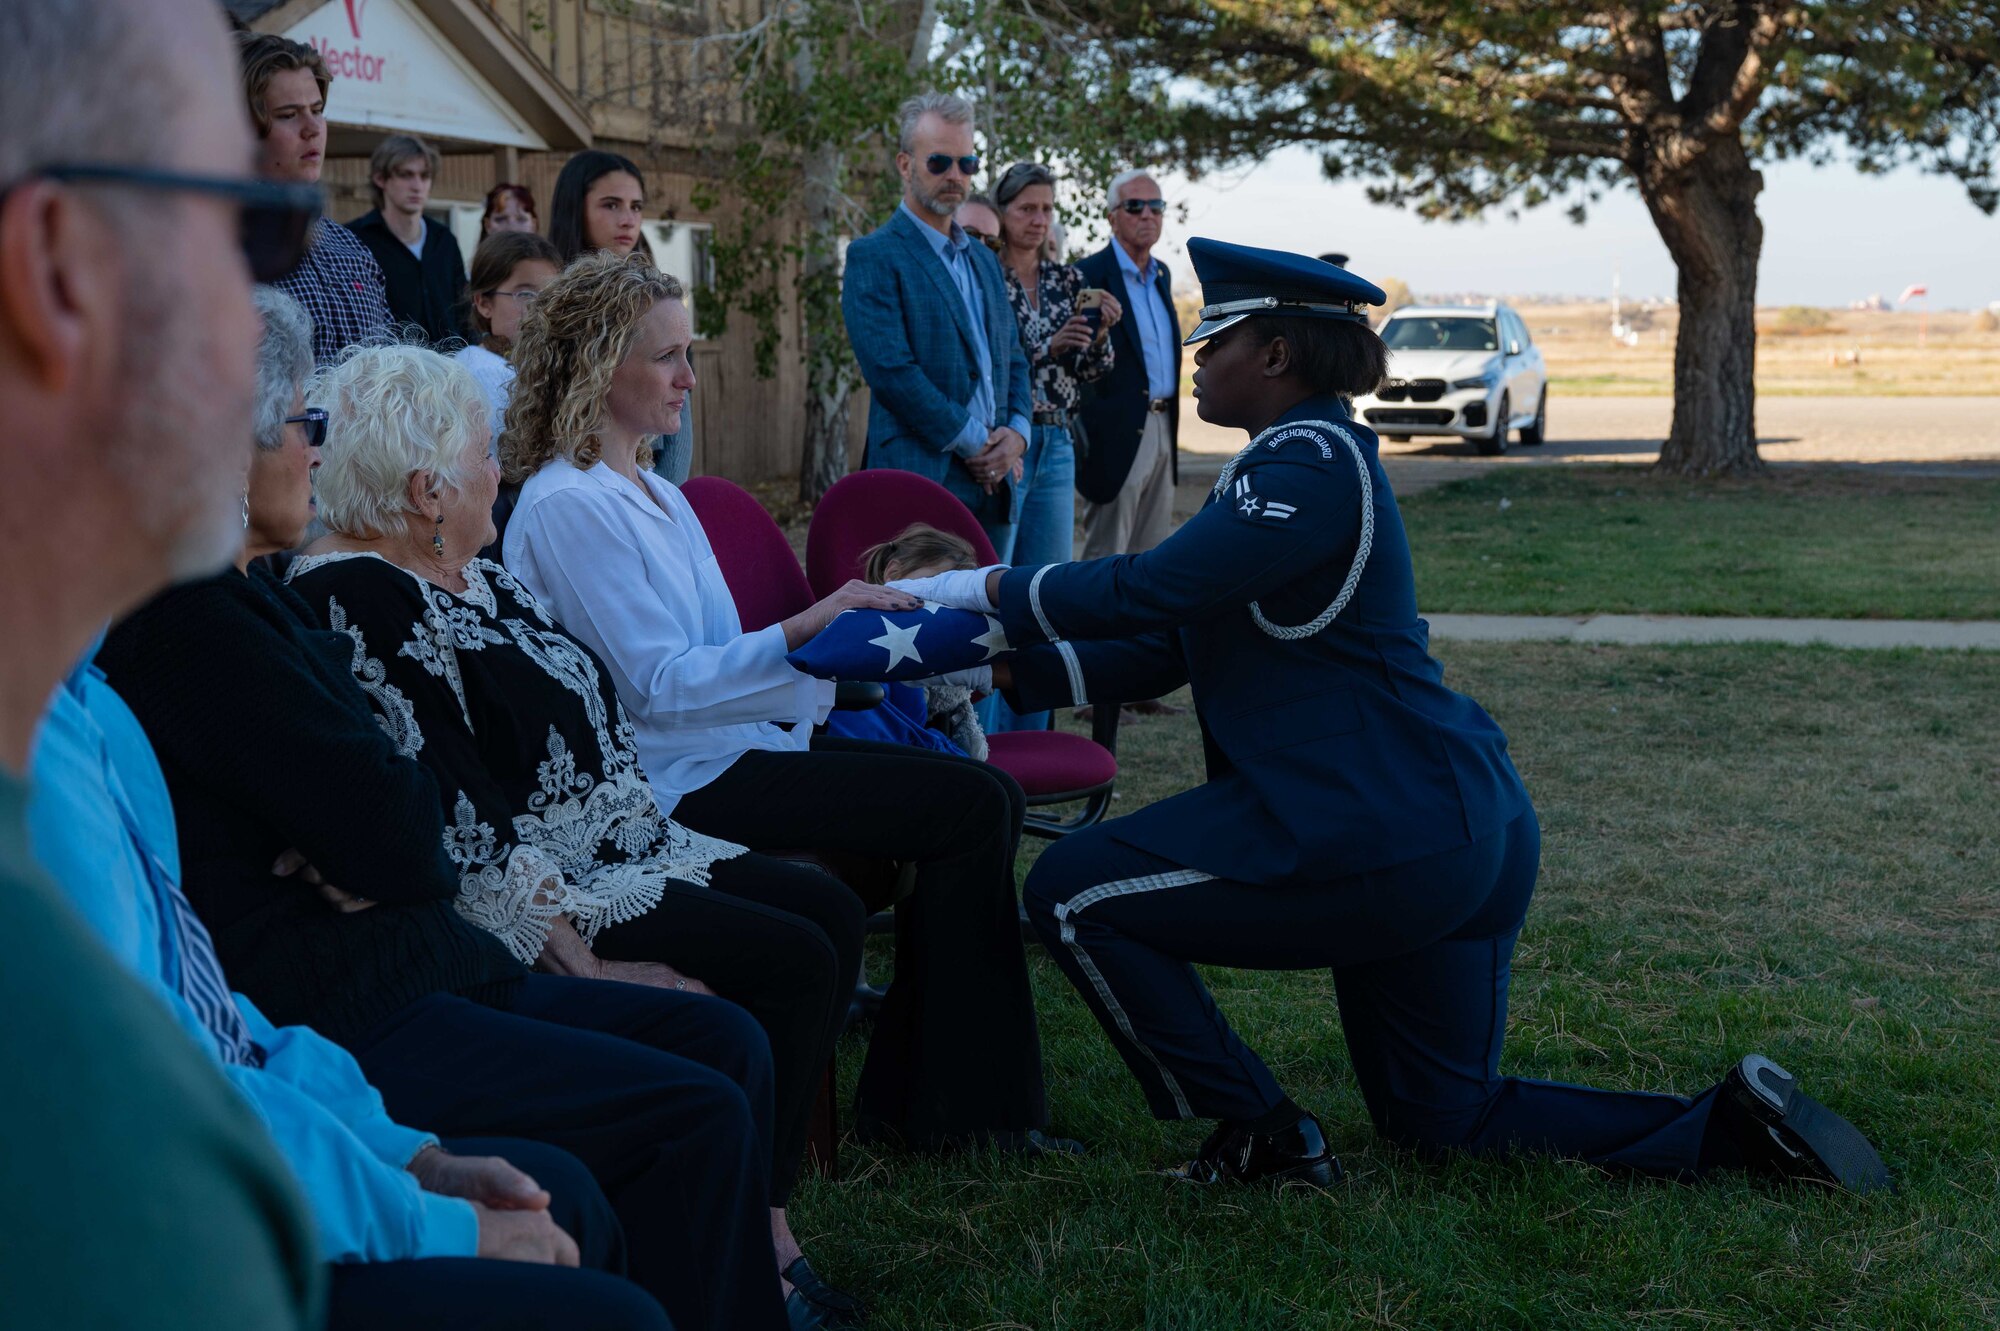 Honor Guard participates in a ceremony.